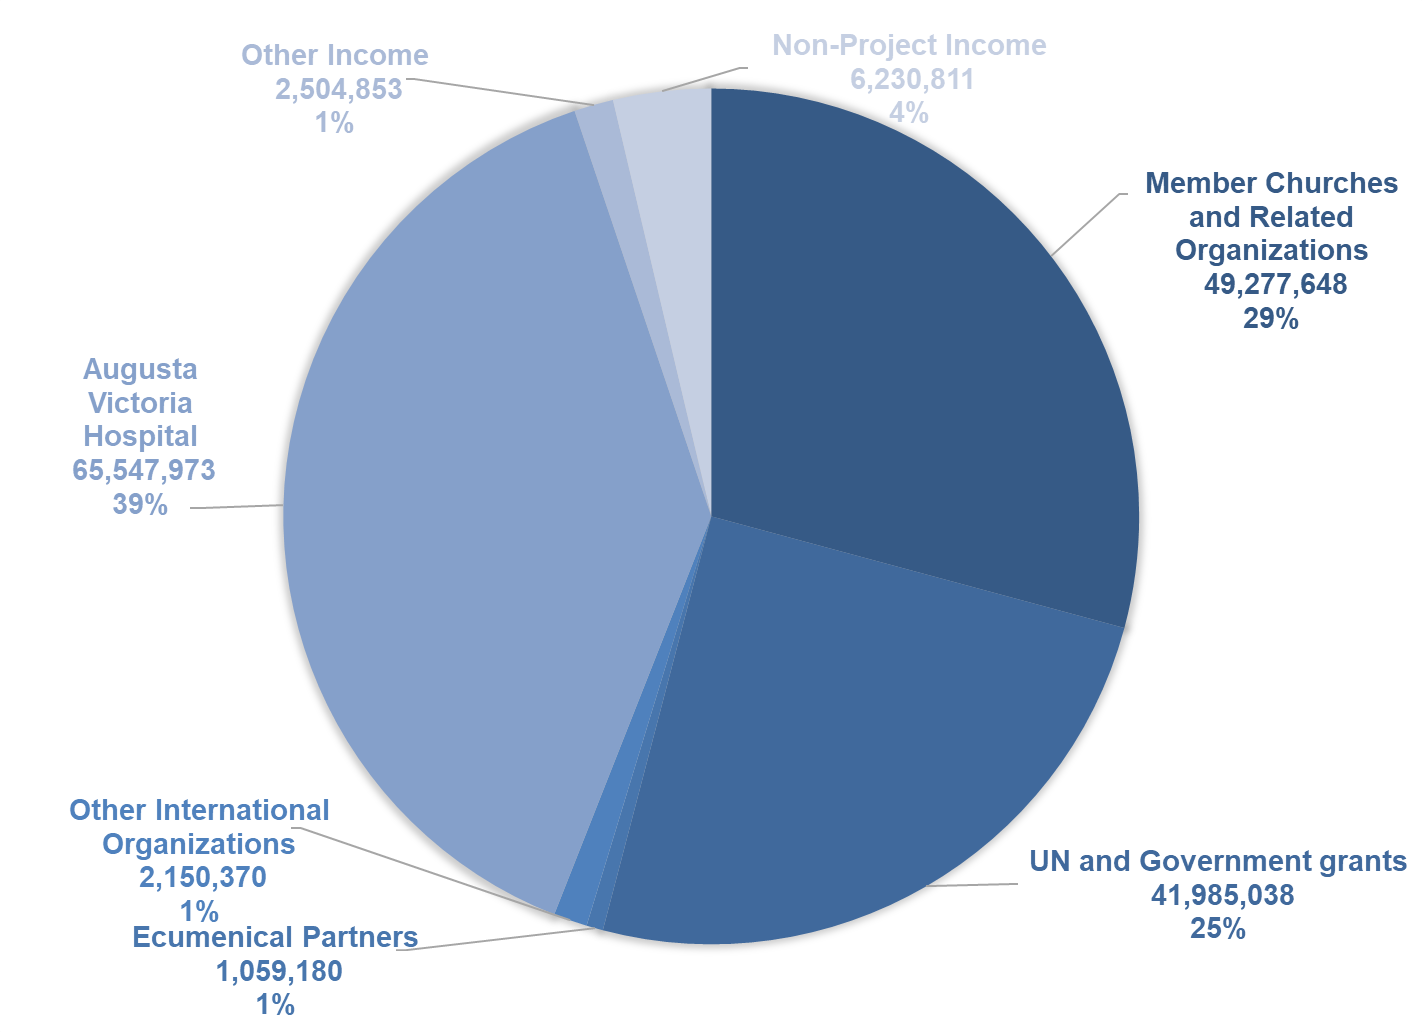 LWF Annual Report 2019 - Income